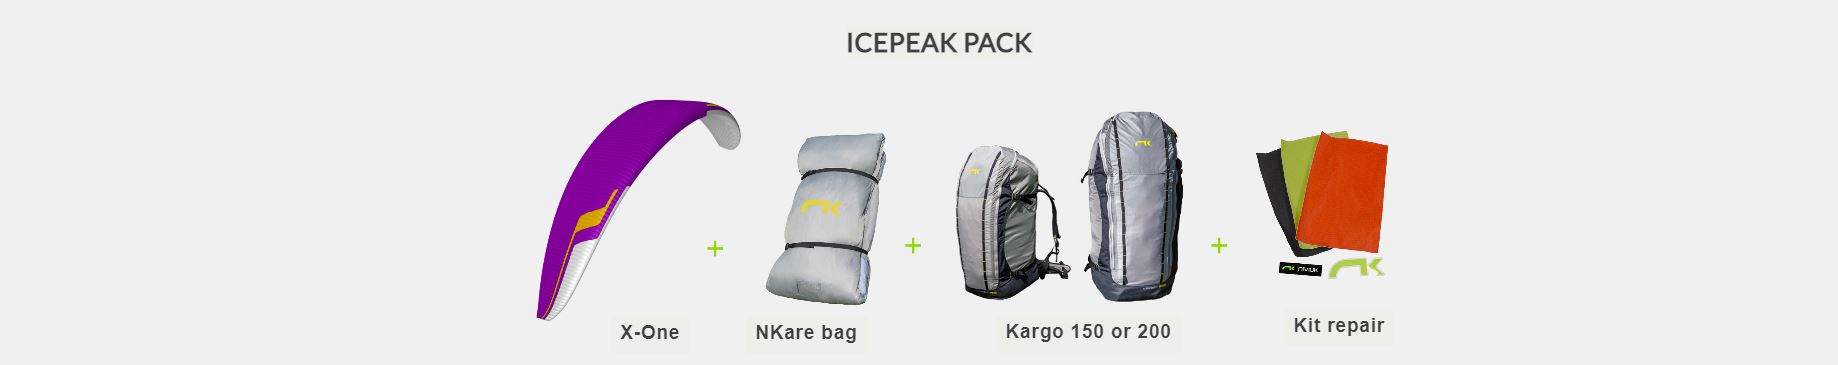 Pack d'équipements vendus avec l'aile Icepeak X-One